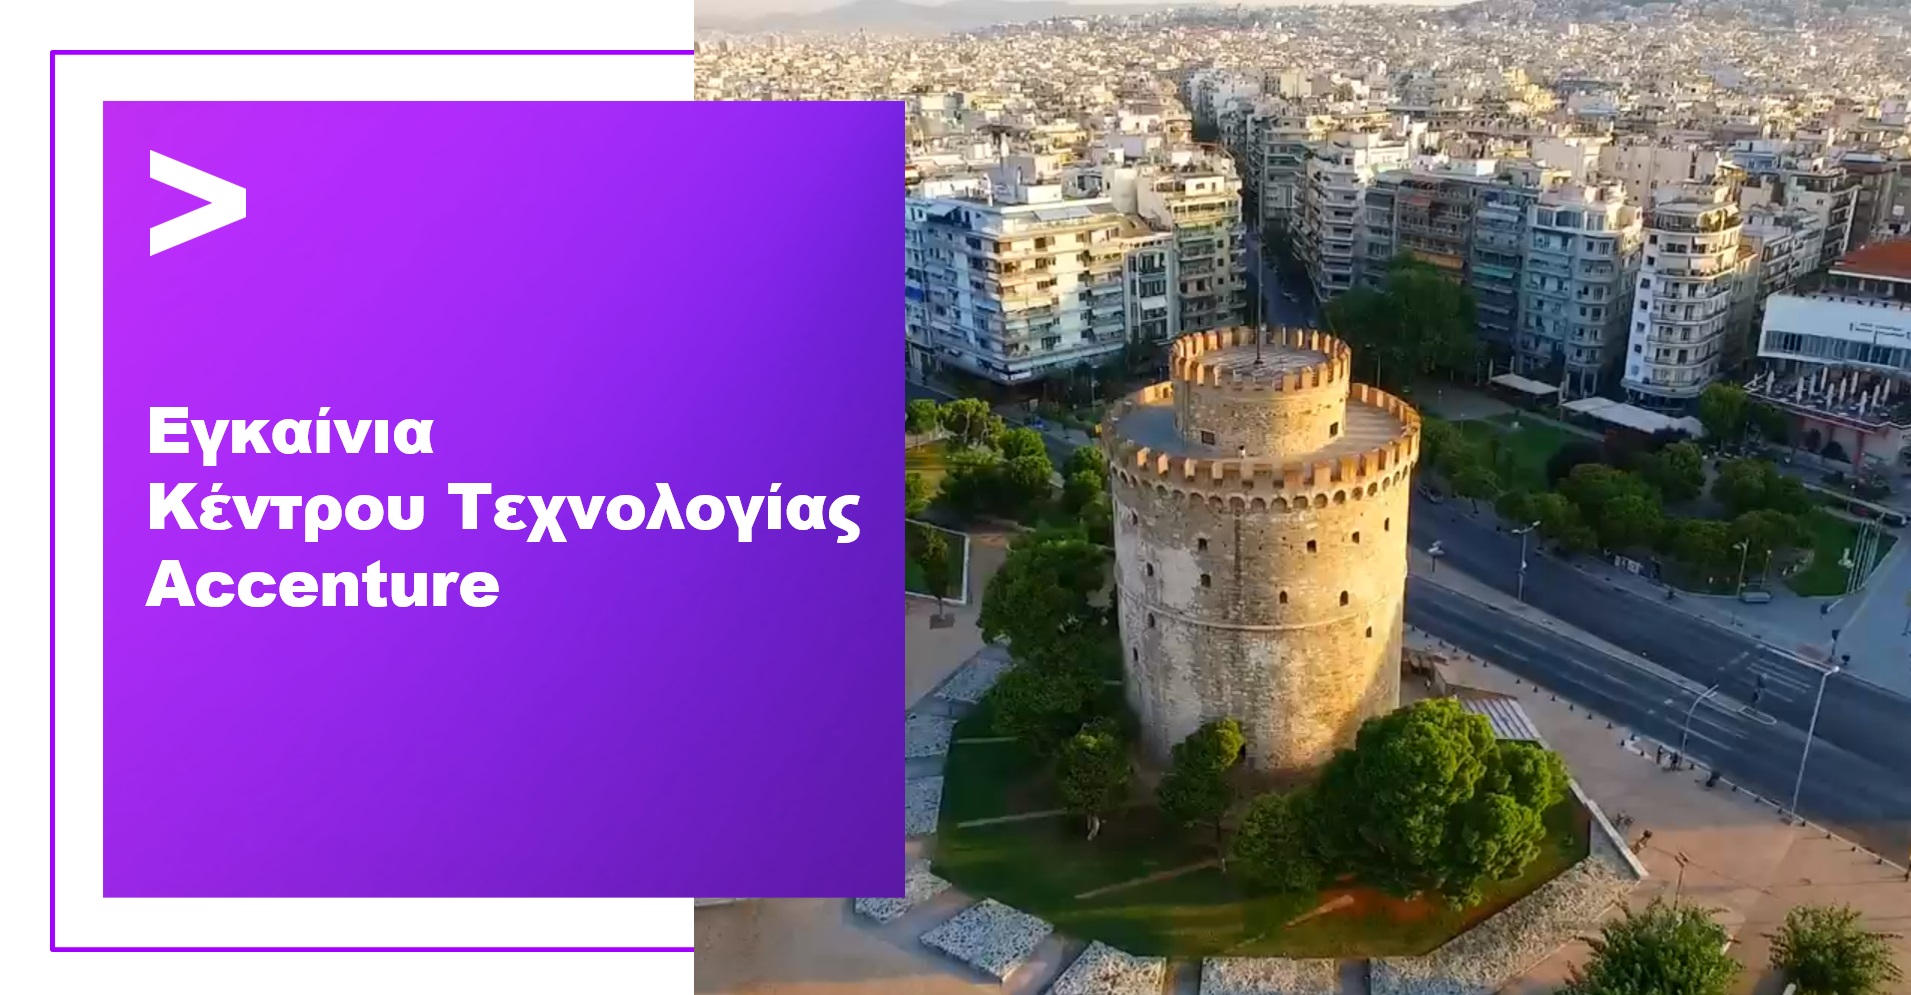 Accenture Thessaloniki Opening1